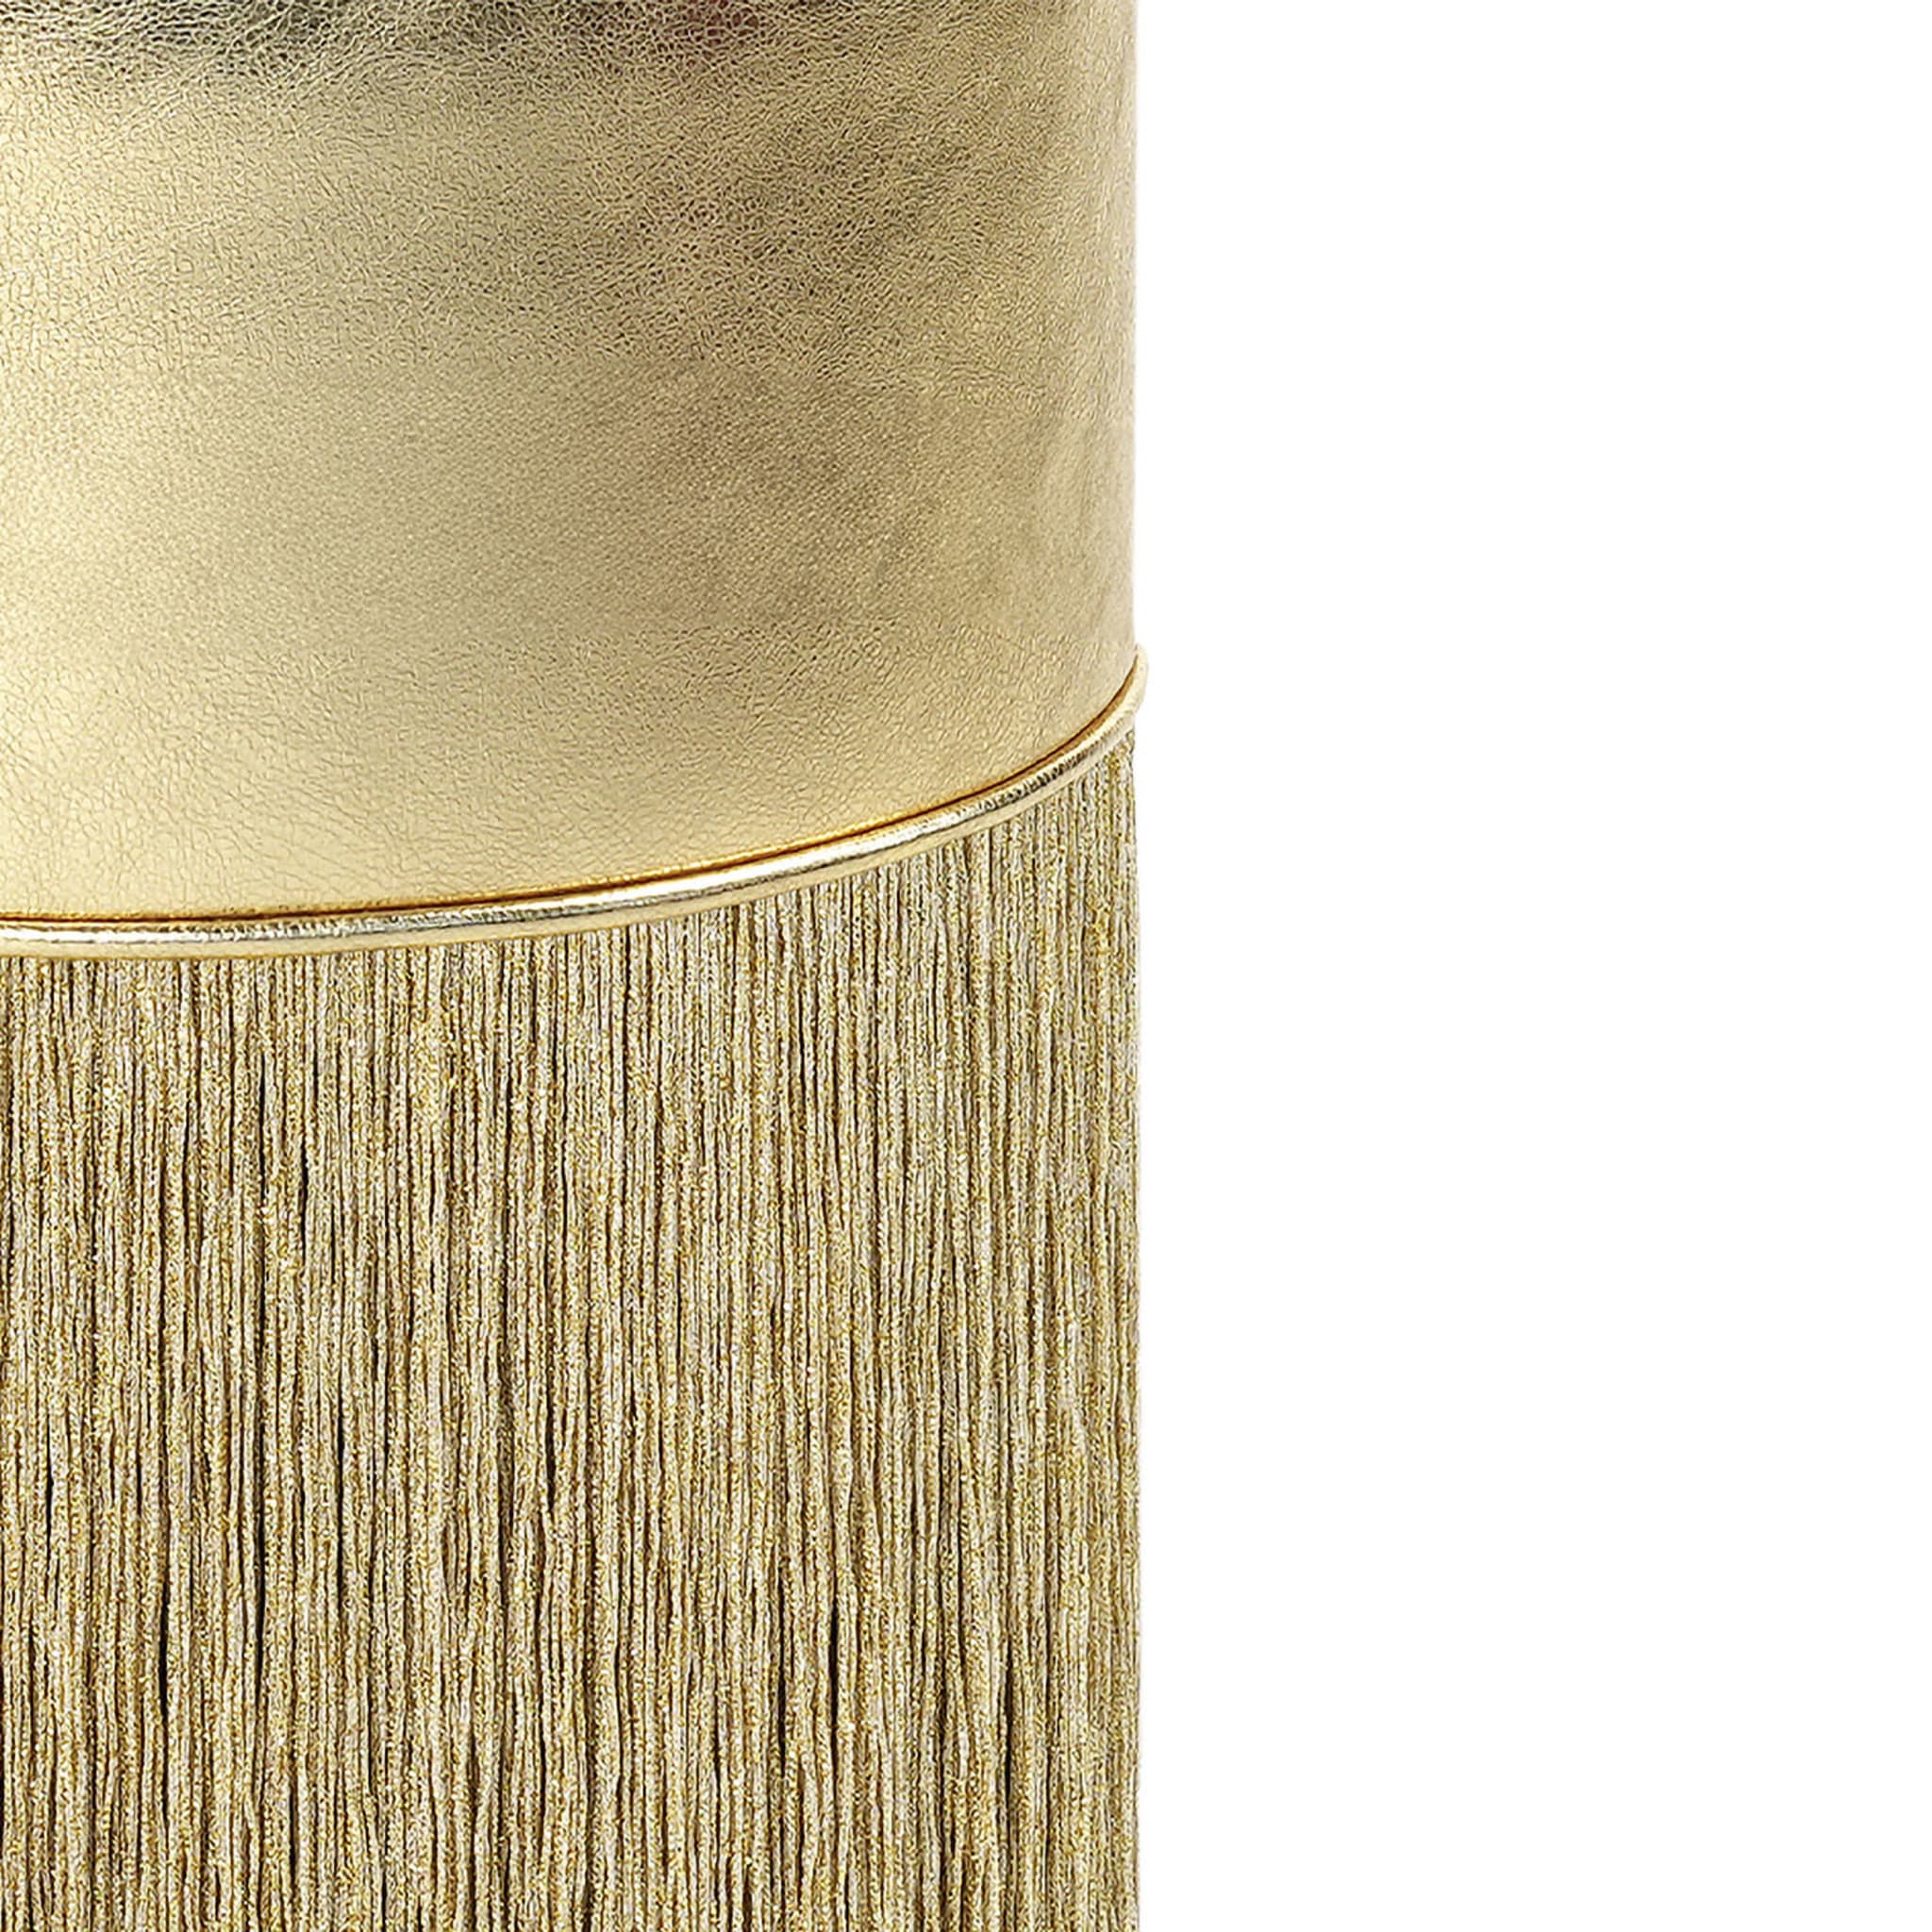 Goldglänzender Metallischer Barhocker aus Leder von Lorenza Bozzoli - Alternative Ansicht 1